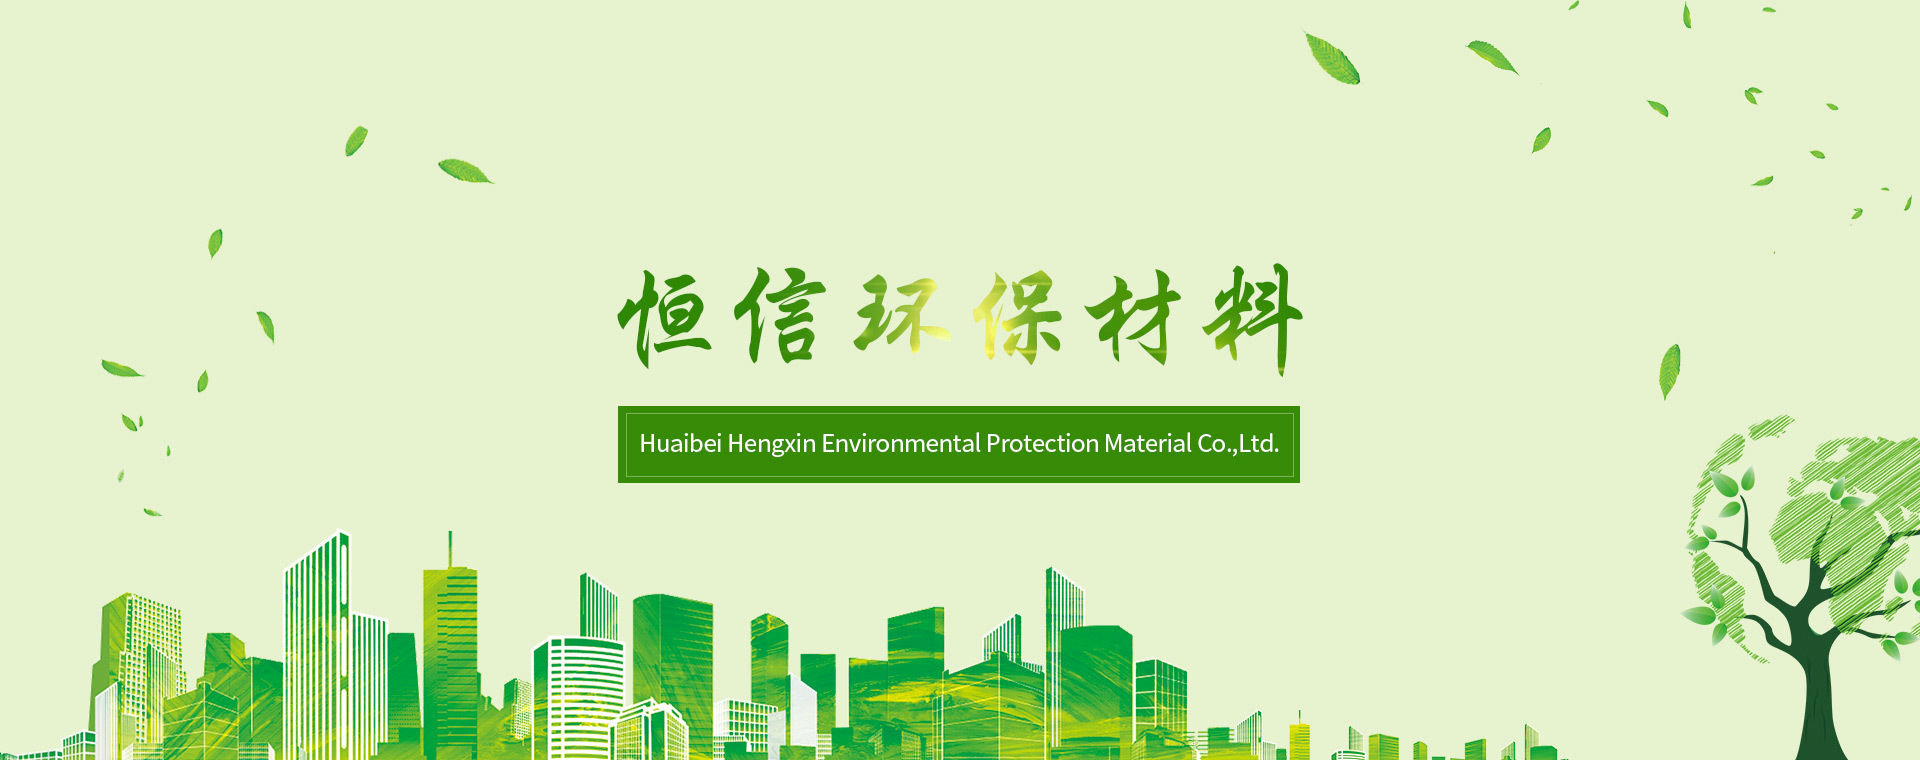 淮北市AG凯时尊龙環保材料有限責任公司的主營產品有複合燒結淨水活性炭、吸潮活性炭、淨水用載銀活性炭、淨水用果殼活性炭等。